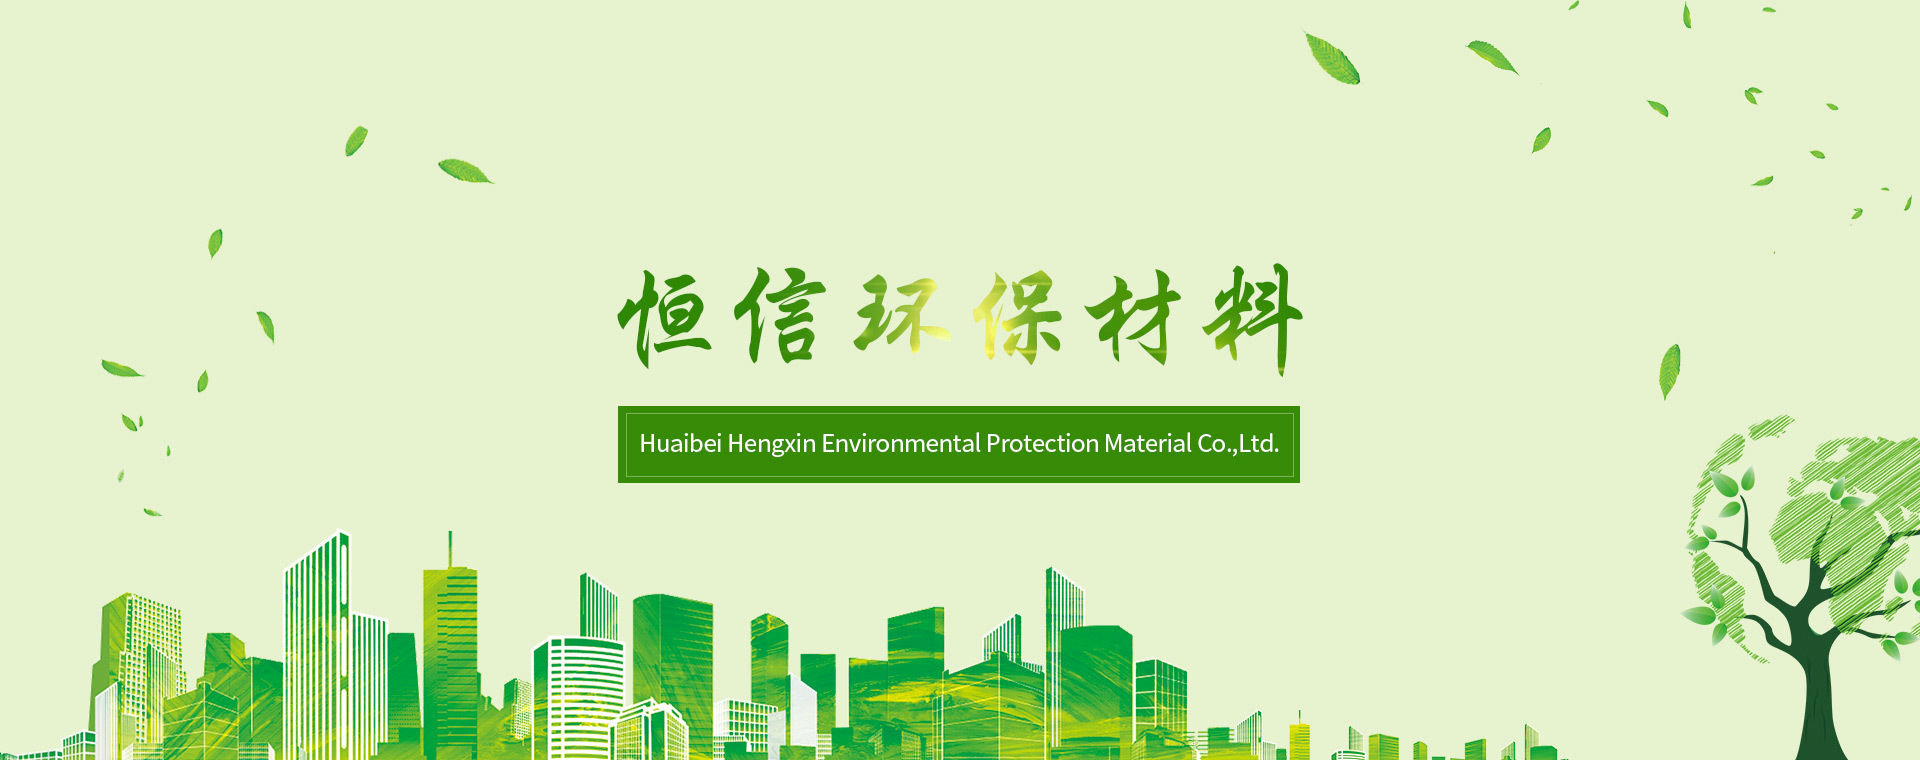 淮北市AG凯时尊龙環保材料有限責任公司的主營產品有複合燒結淨水活性炭、吸潮活性炭、淨水用載銀活性炭、淨水用果殼活性炭等。